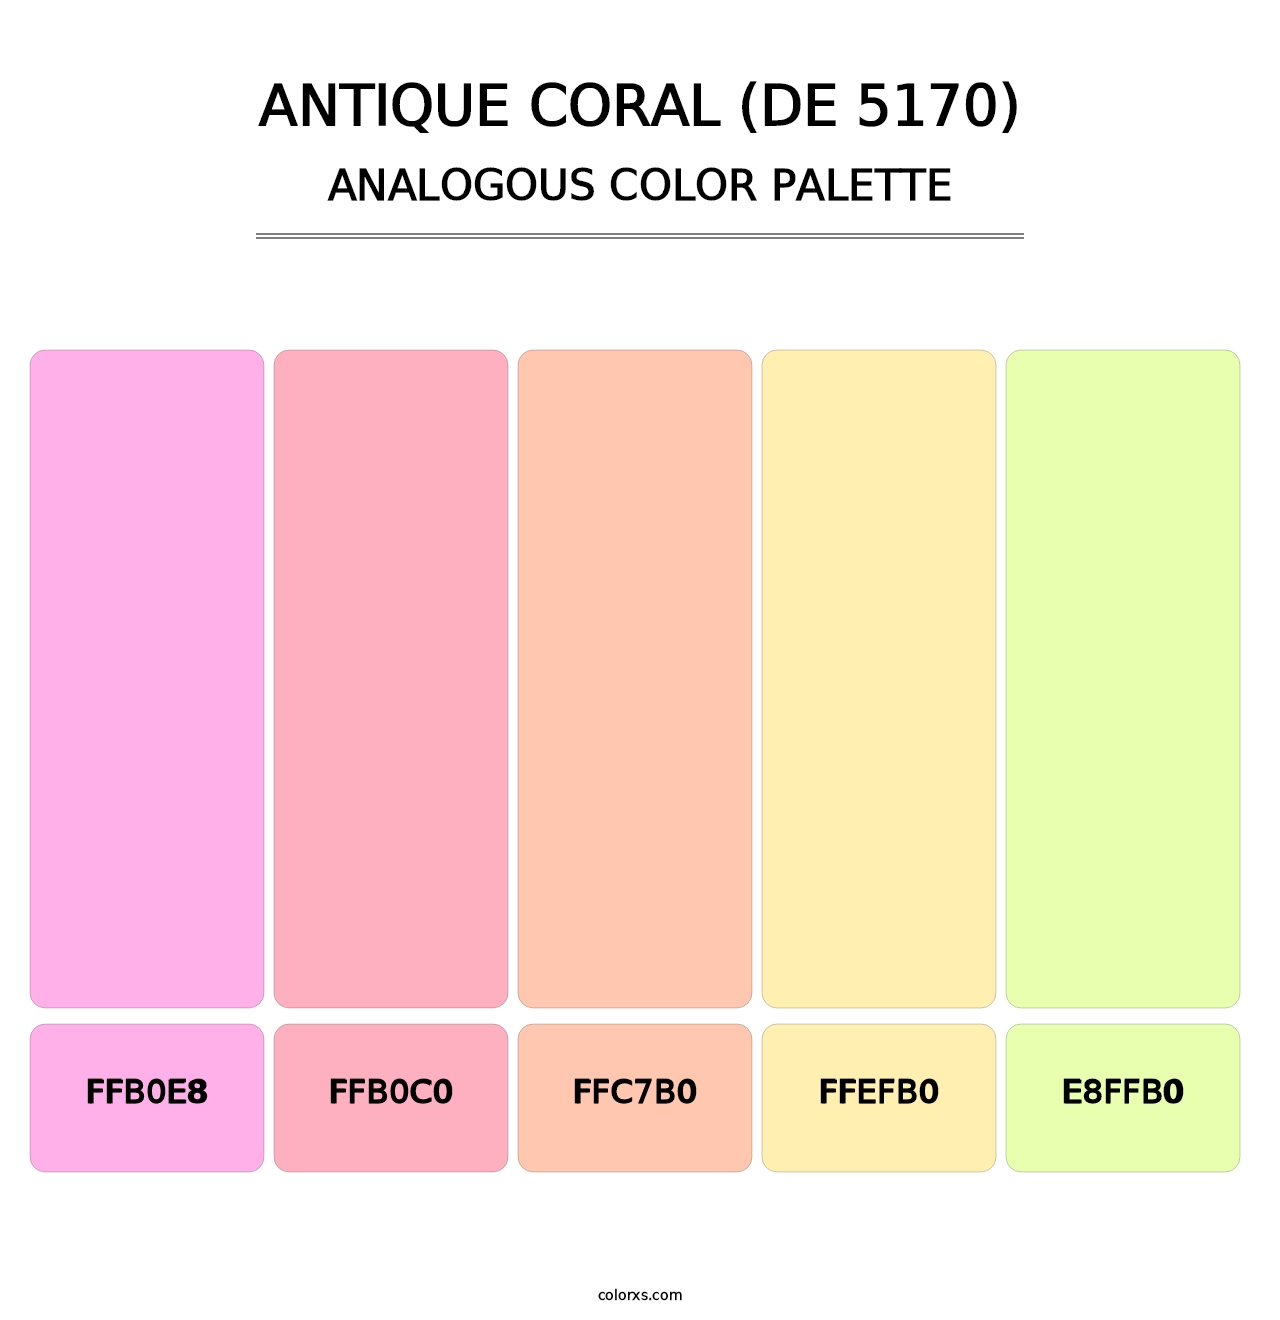 Antique Coral (DE 5170) - Analogous Color Palette